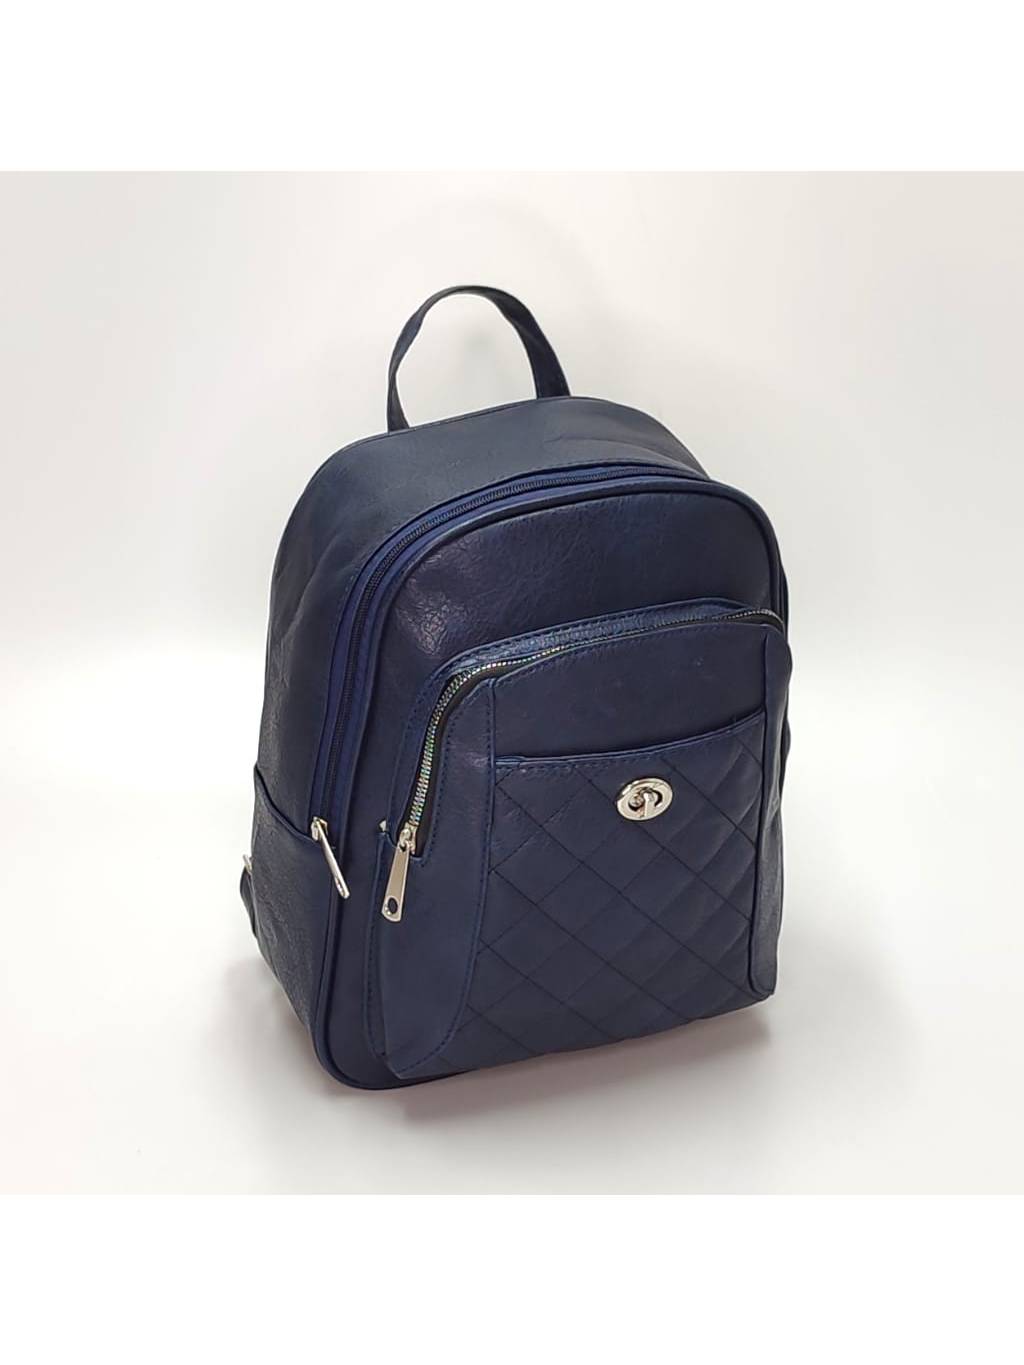 Dámsky ruksak DL0157 tmavo modrý www.kabelky vypredaj (1)